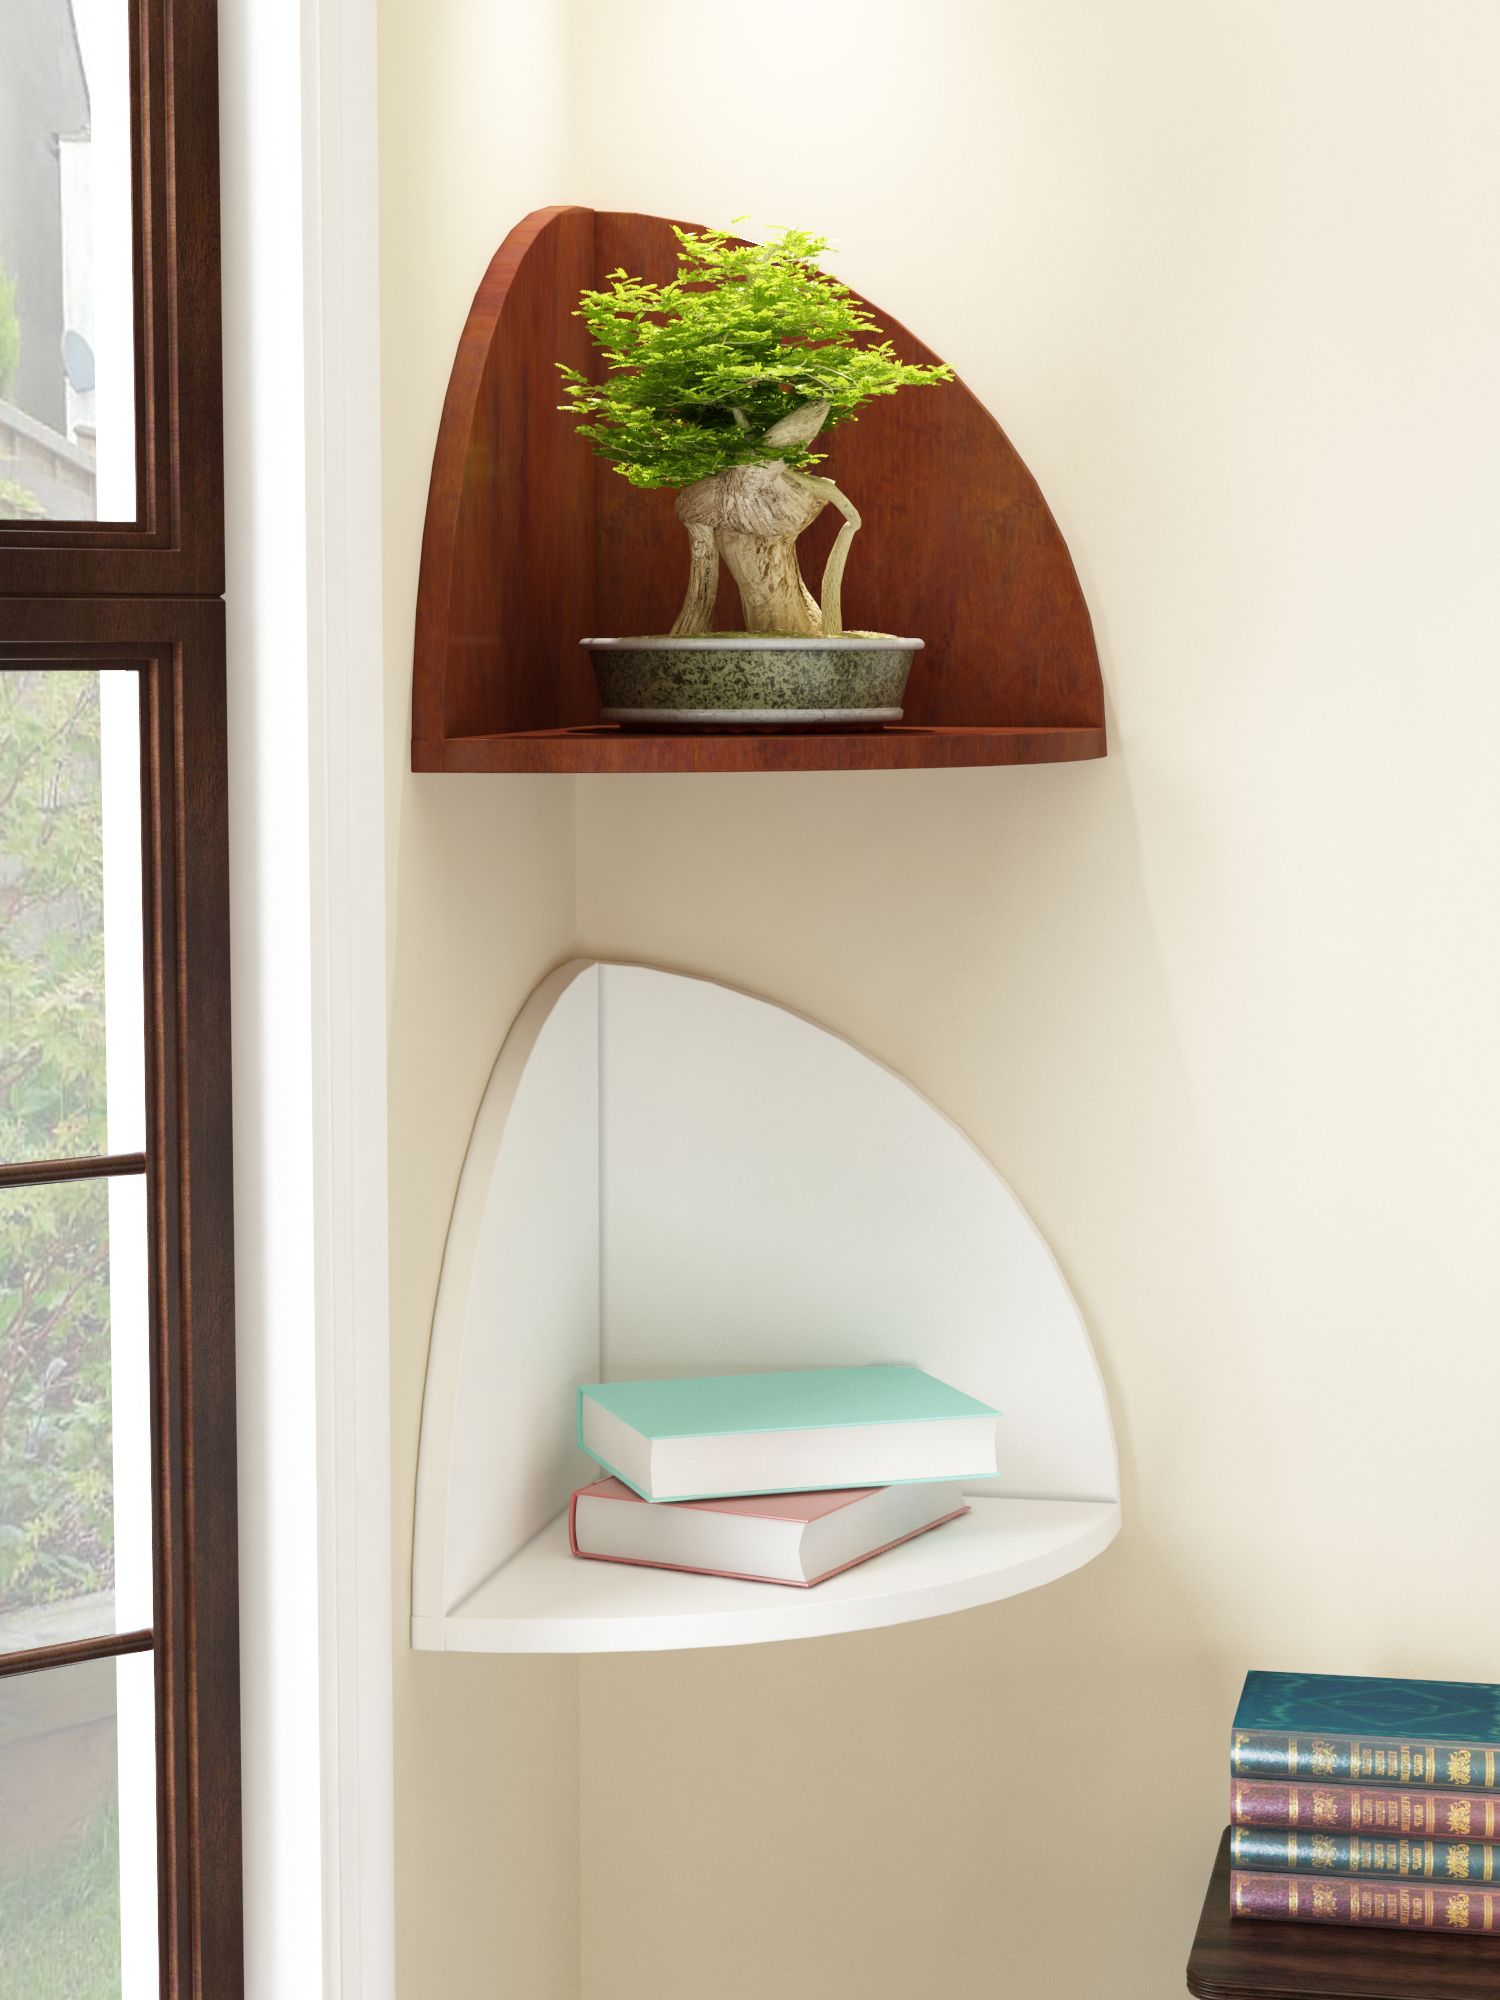 Home Sparkle MDF Decorative Corner Wall Shelves, Suitable For Living Room/Bed Room-Set of 2 (Designed By Craftsman)